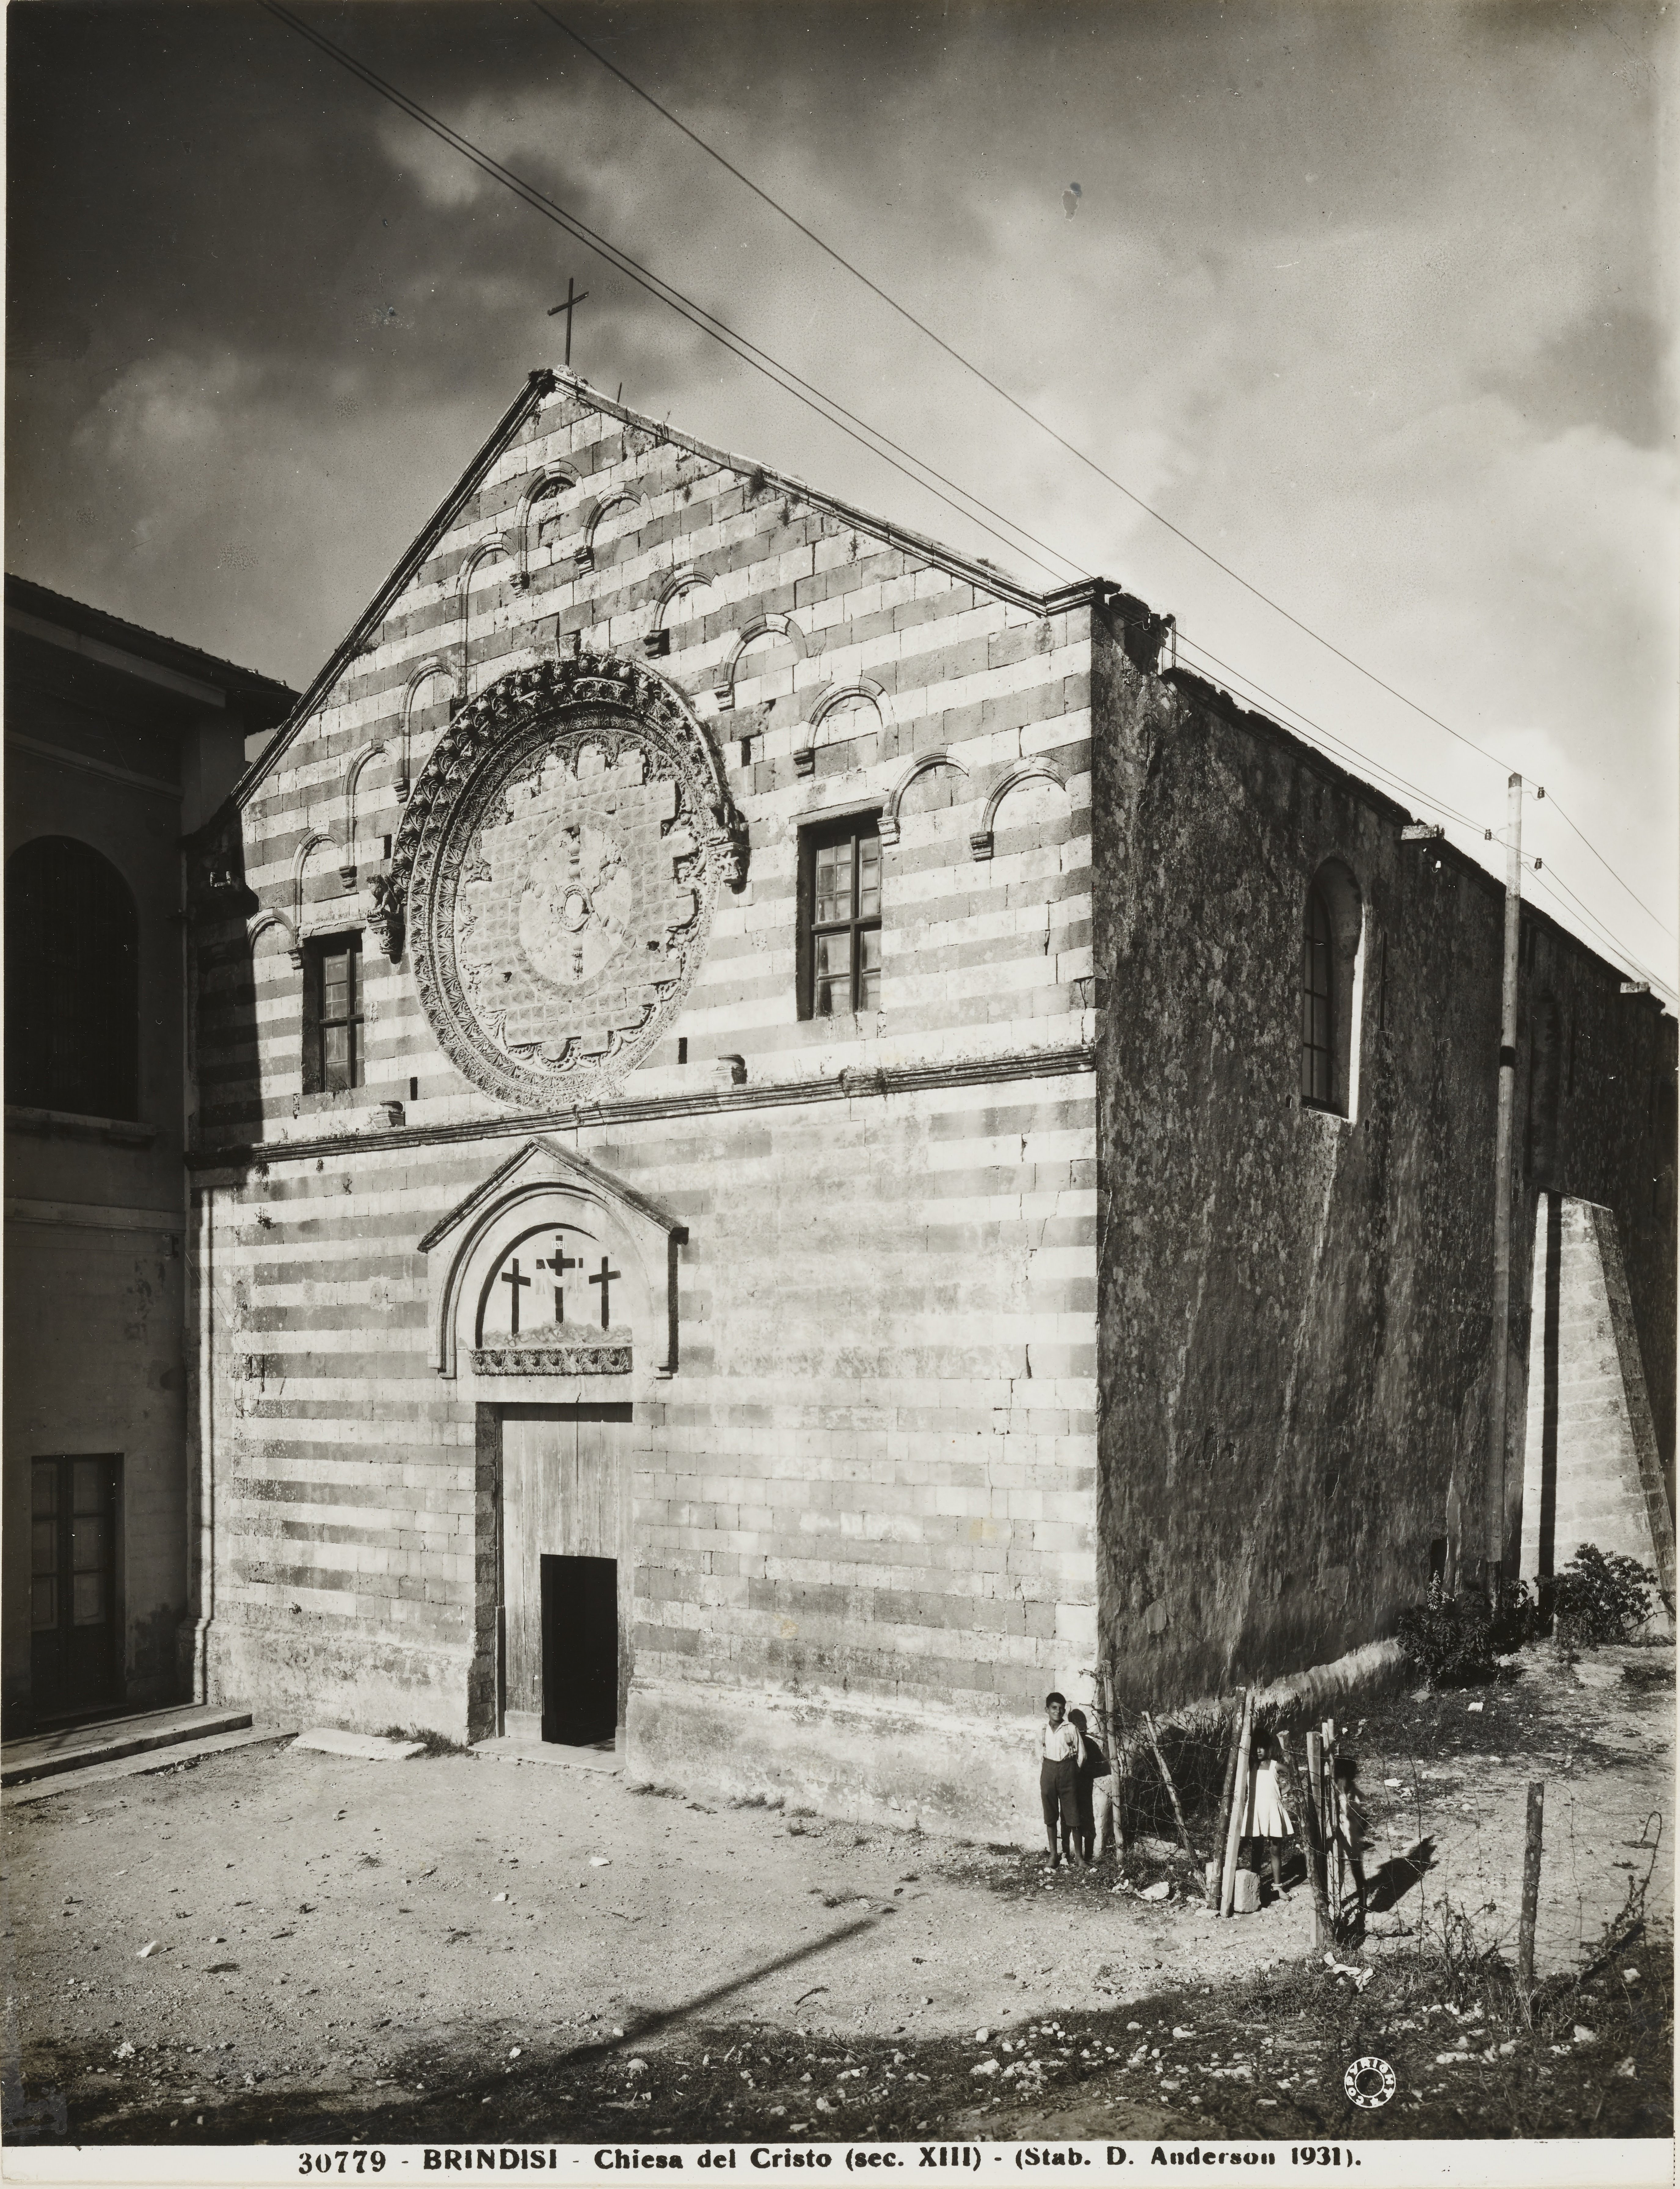 Anderson, Domenico, Brindisi - Chiesa del cristo, facciata, 1926-1950, gelatina ai sali d'argento, MPI141573